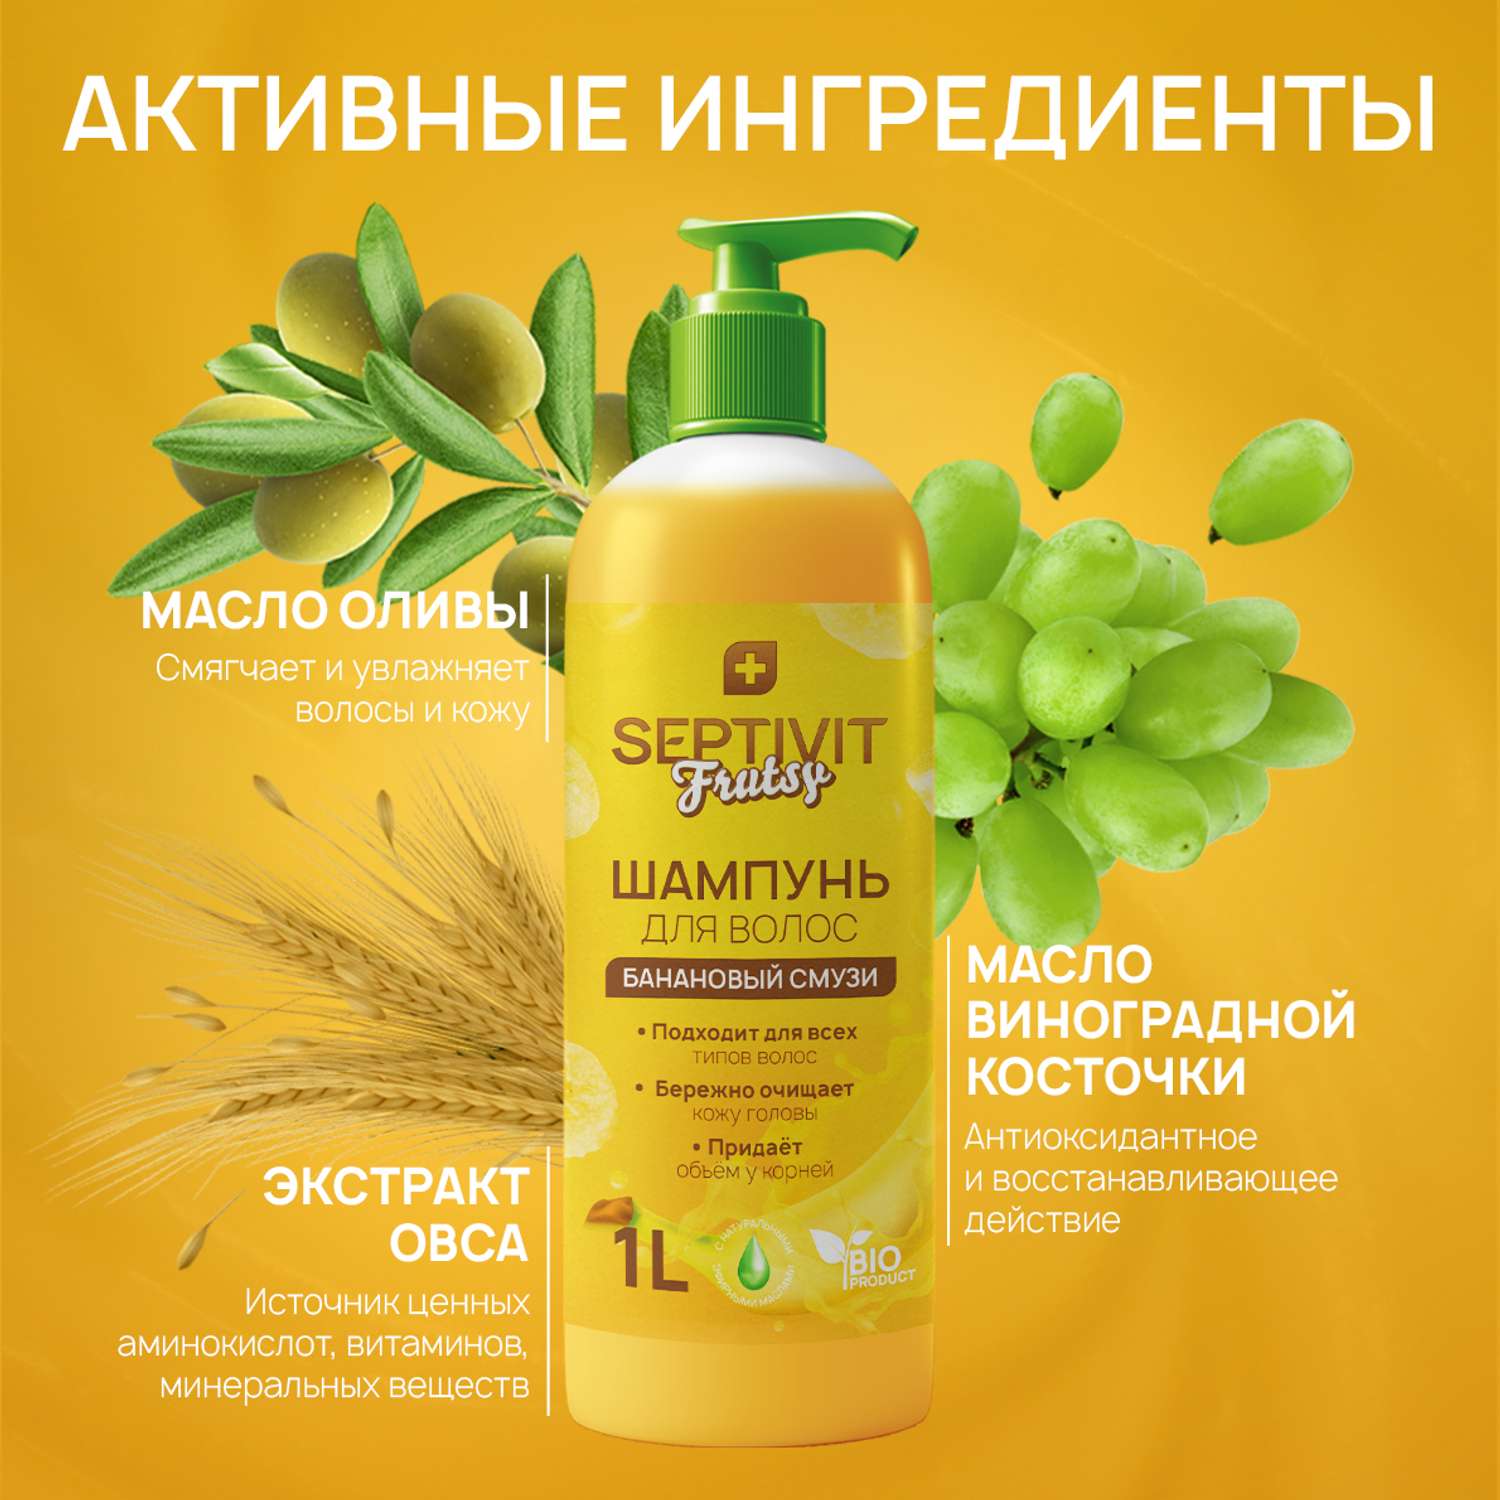 Шампунь для волос SEPTIVIT Premium Frutsy банановый смузи 1 л - фото 6